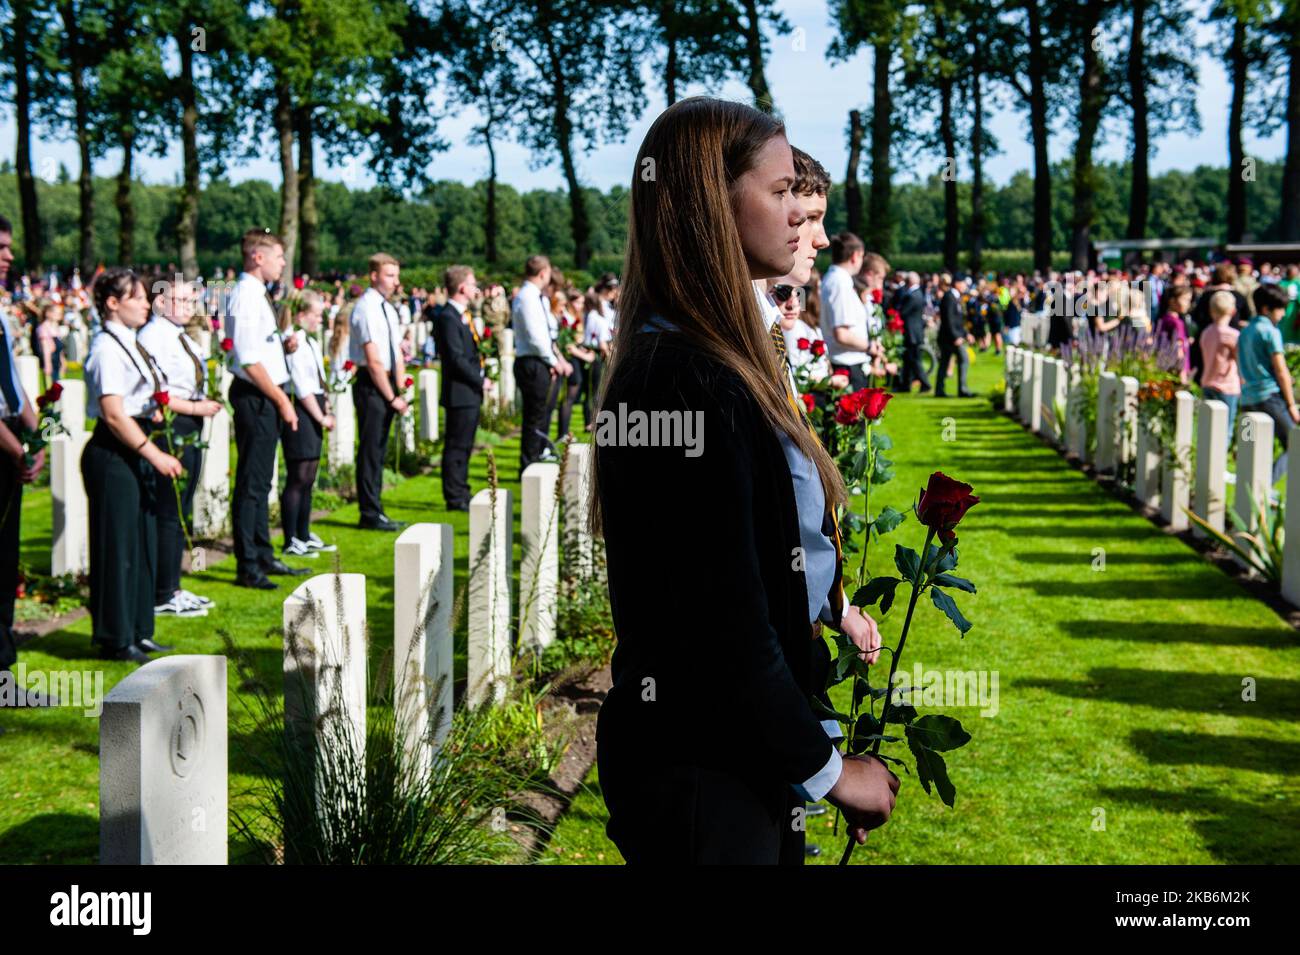 Settembre 22nd, Oosterbeek. Nel cimitero di guerra di Arnhem Oosterbeek, sono sepolti più di 1750 soldati alleati. Nell'ambito delle commemorazioni del 75th° anniversario dell'operazione Market Garden, si è svolto un servizio commemorativo alla presenza di veterani, loro parenti e migliaia di persone. Tradizionalmente i 'figli di fiori' del comune di Remkum depongono i fiori alle lapidi, quest'anno sono stati anche bambini di altri paesi che posavano i fiori alle lapidi. Su ogni tomba è posto un arco di pietra bianca, sul campo d'onore è una "Croce del sacrificio" fatta di pietra Portland, sulla quale è collocato un bronzo Foto Stock